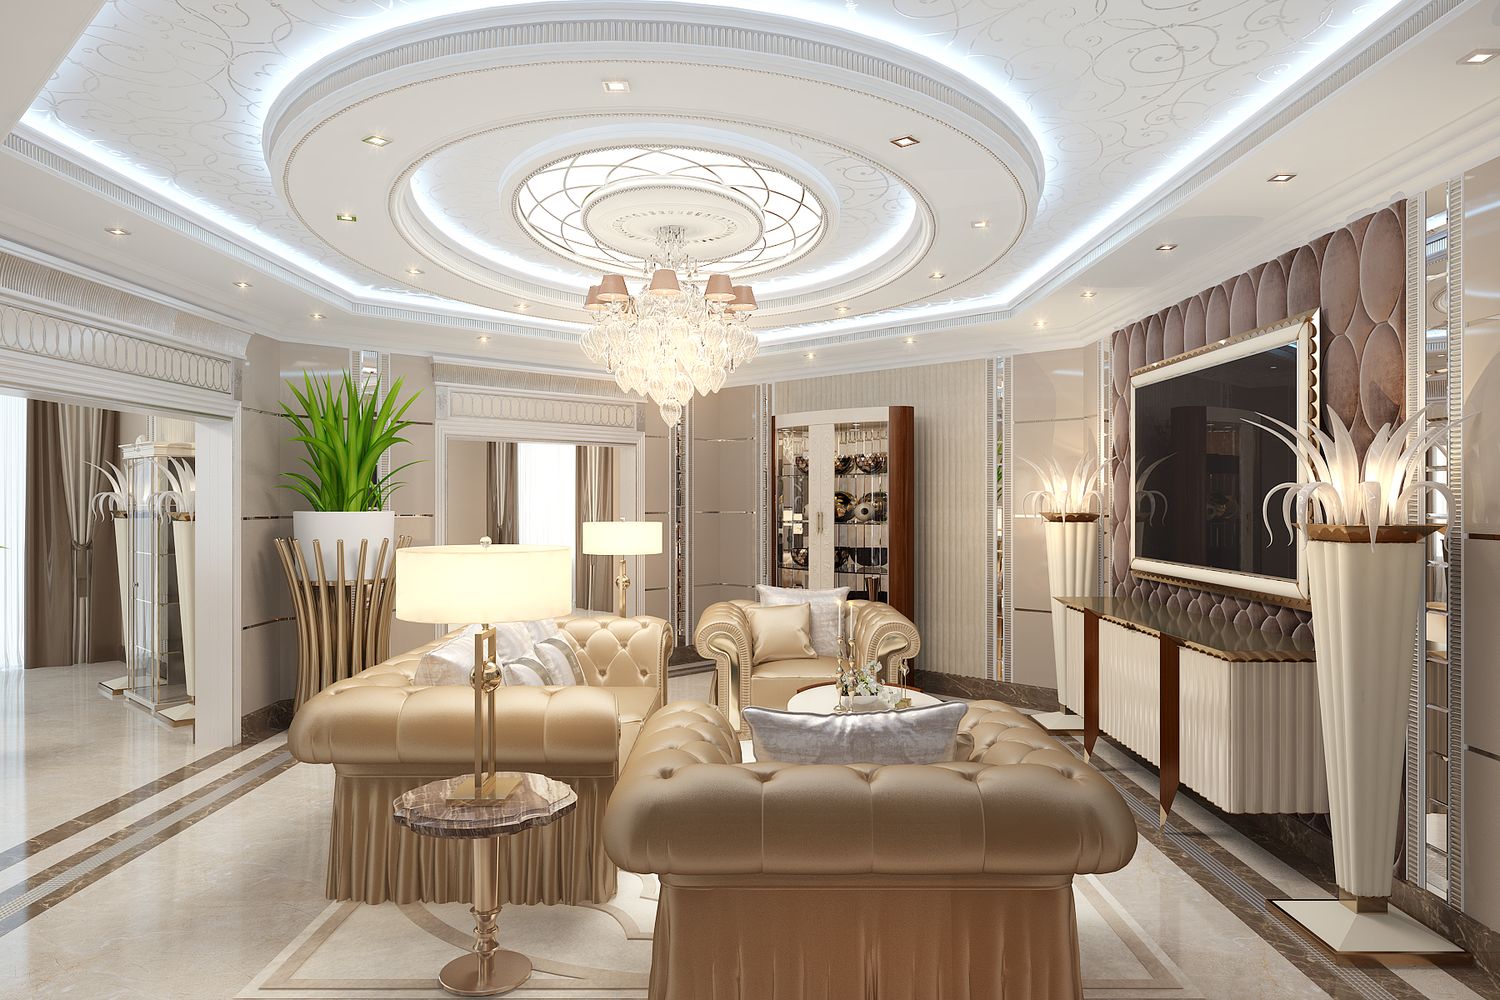 LUXURY ANTONOVICH DESIGN UAE: Living Room Decoration Ideas by Luxury Antonovich Design